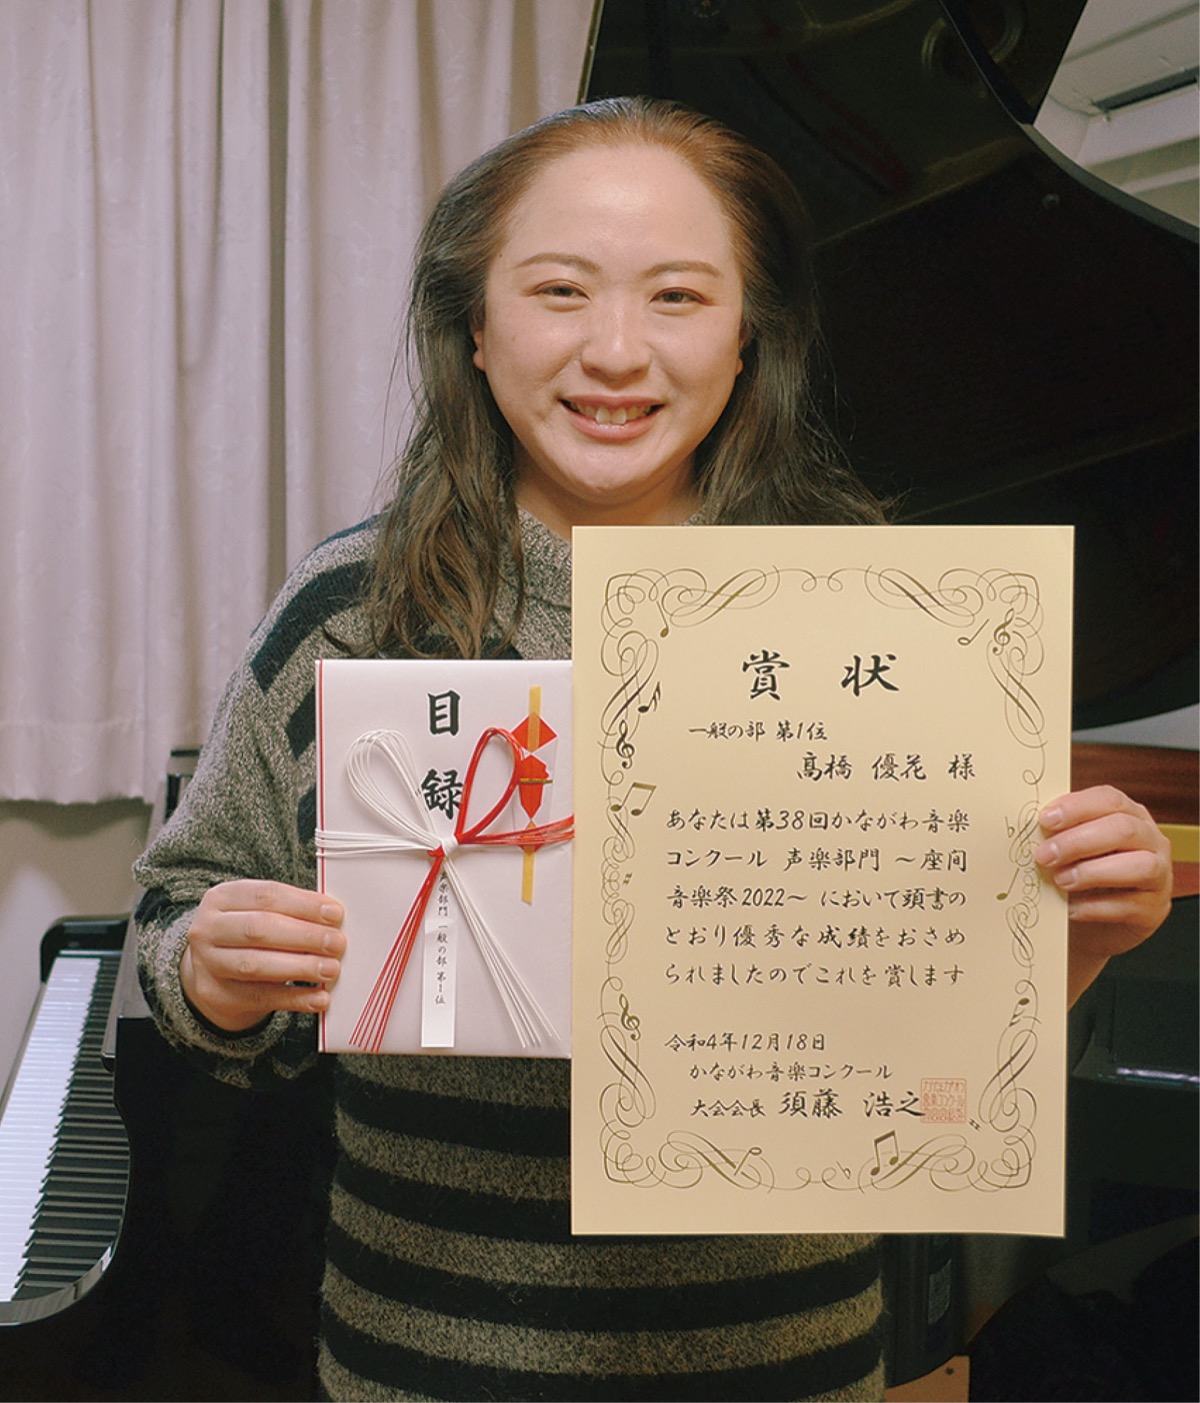  かながわ音楽コン 高橋優花さんが１位 新設の声楽部門本選で | 伊勢原 | タウンニュース